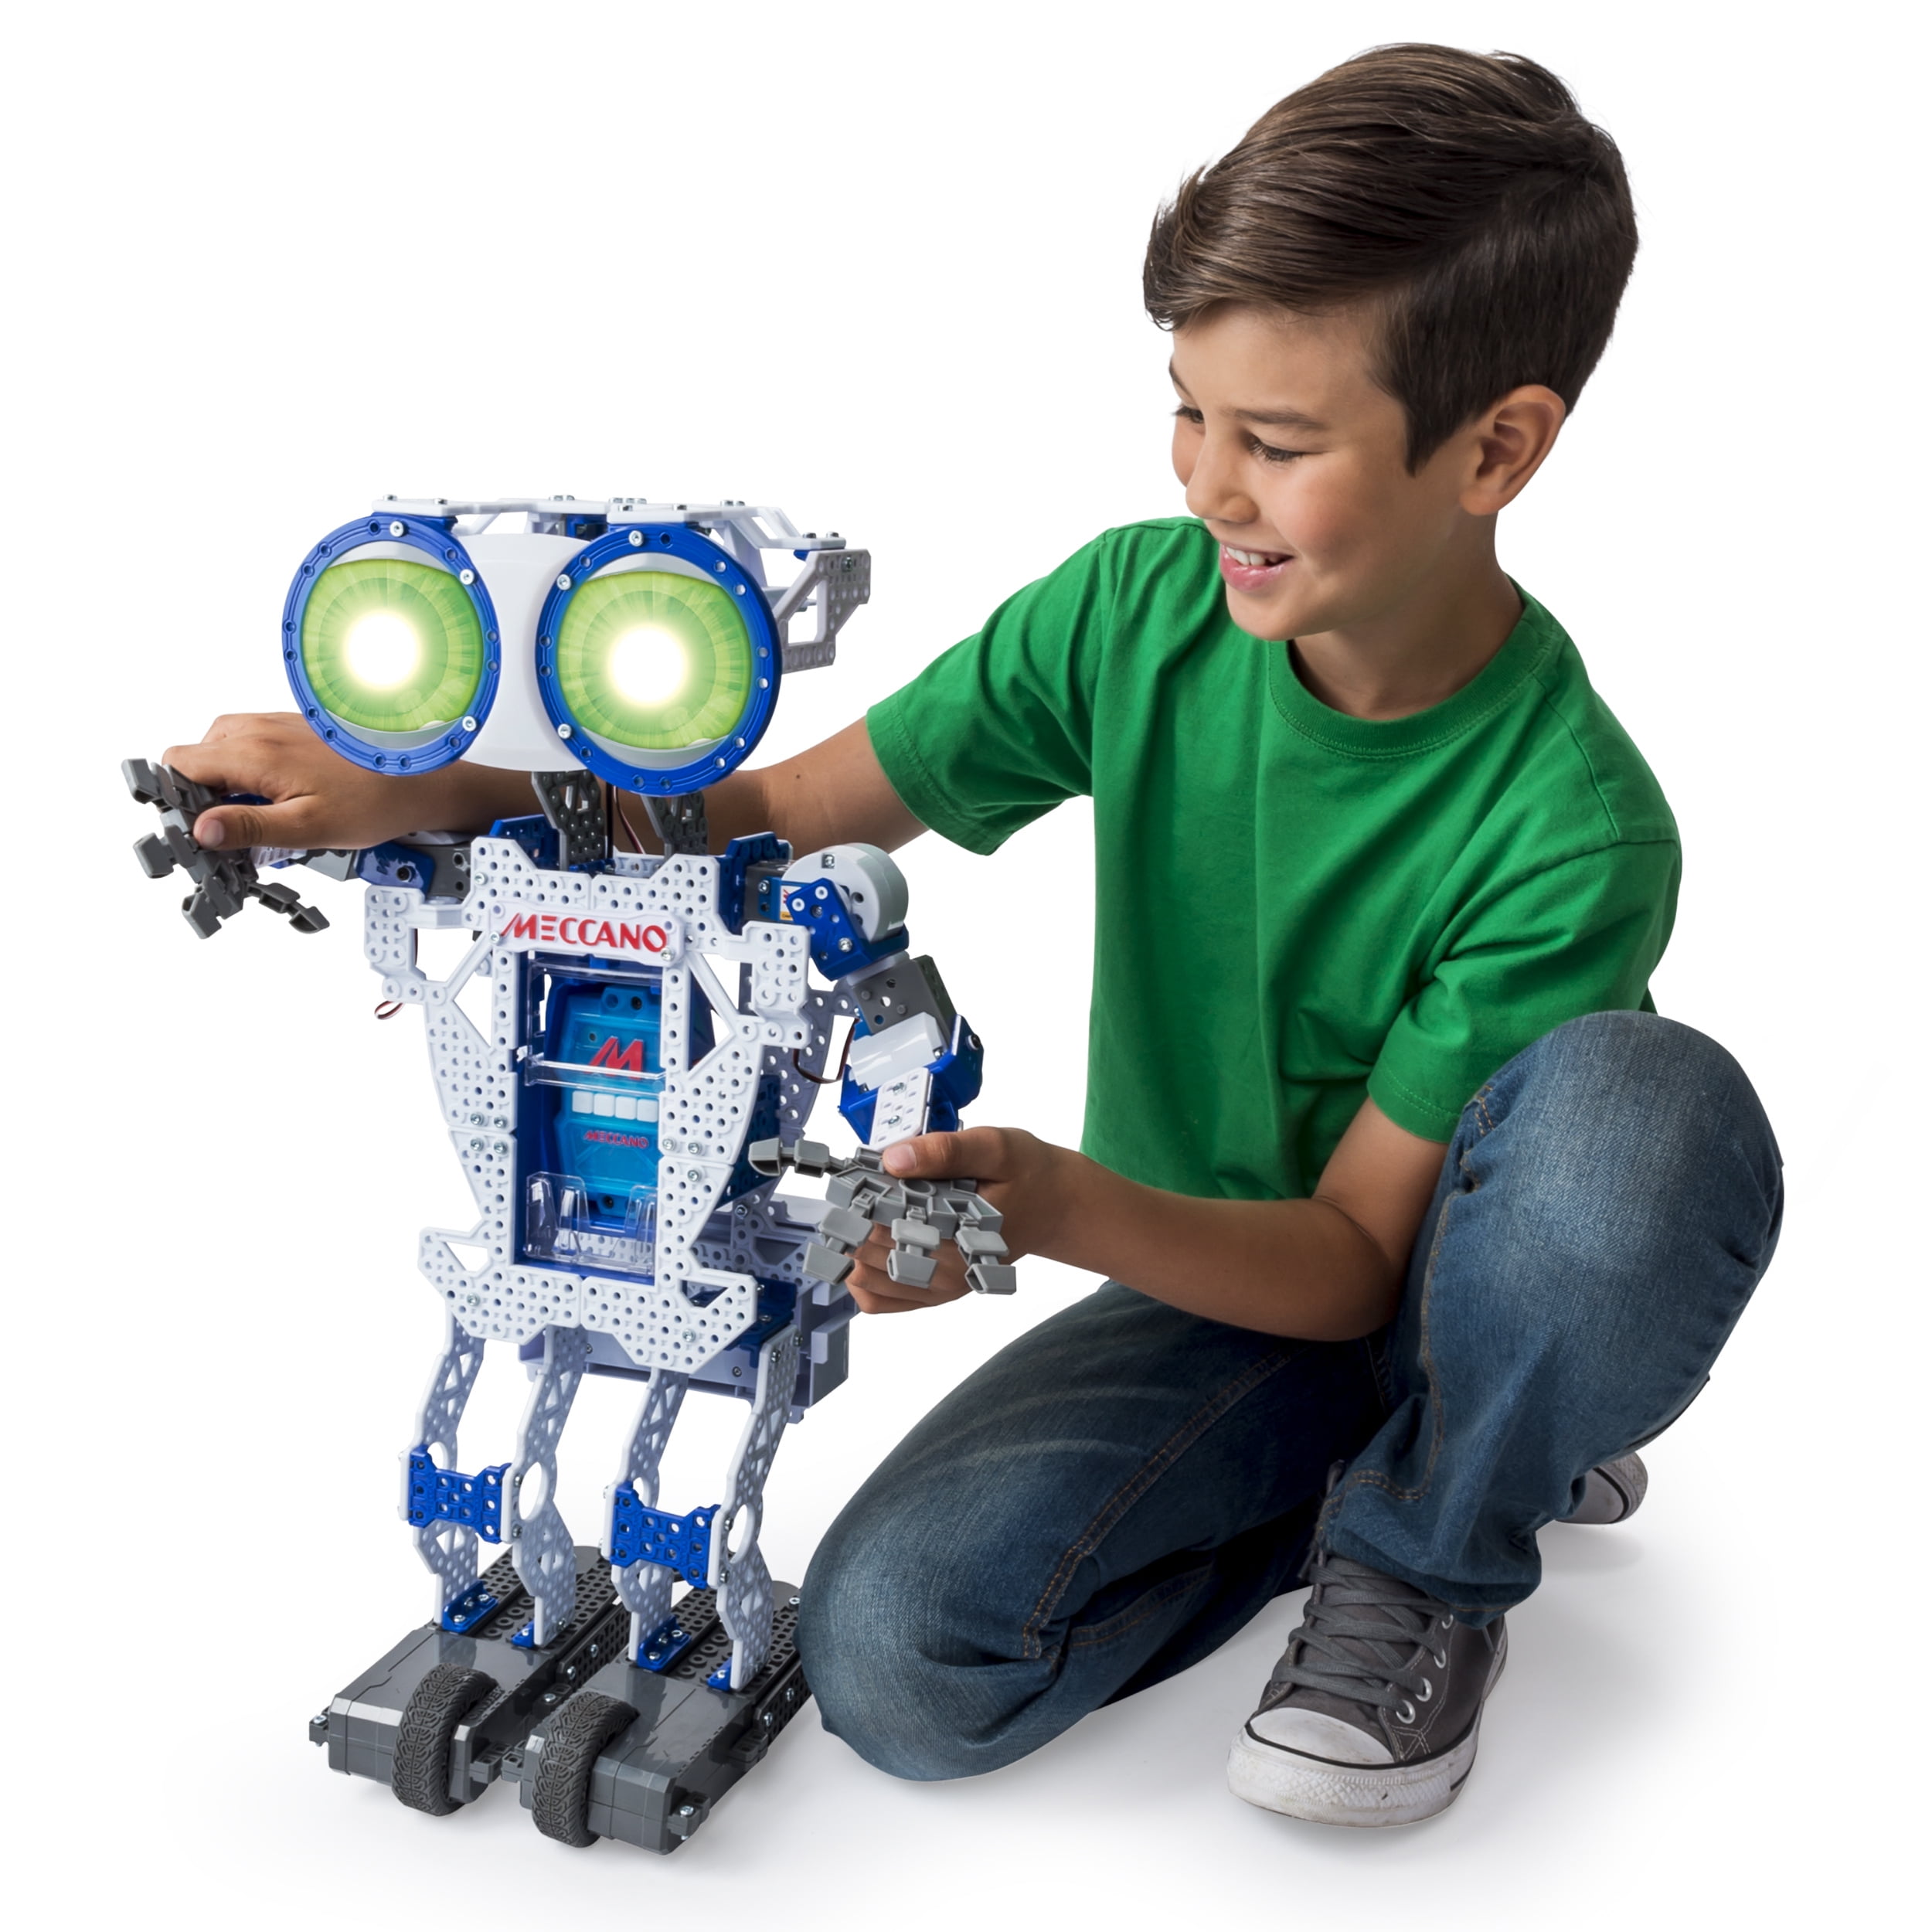 Купить подарок мальчику 9. Робот Меккано Меканоид. Meccano Erector Meccanoid g15. Электронный конструктор робот Meccanoid XL 2.0. Необычные игрушки для мальчиков.